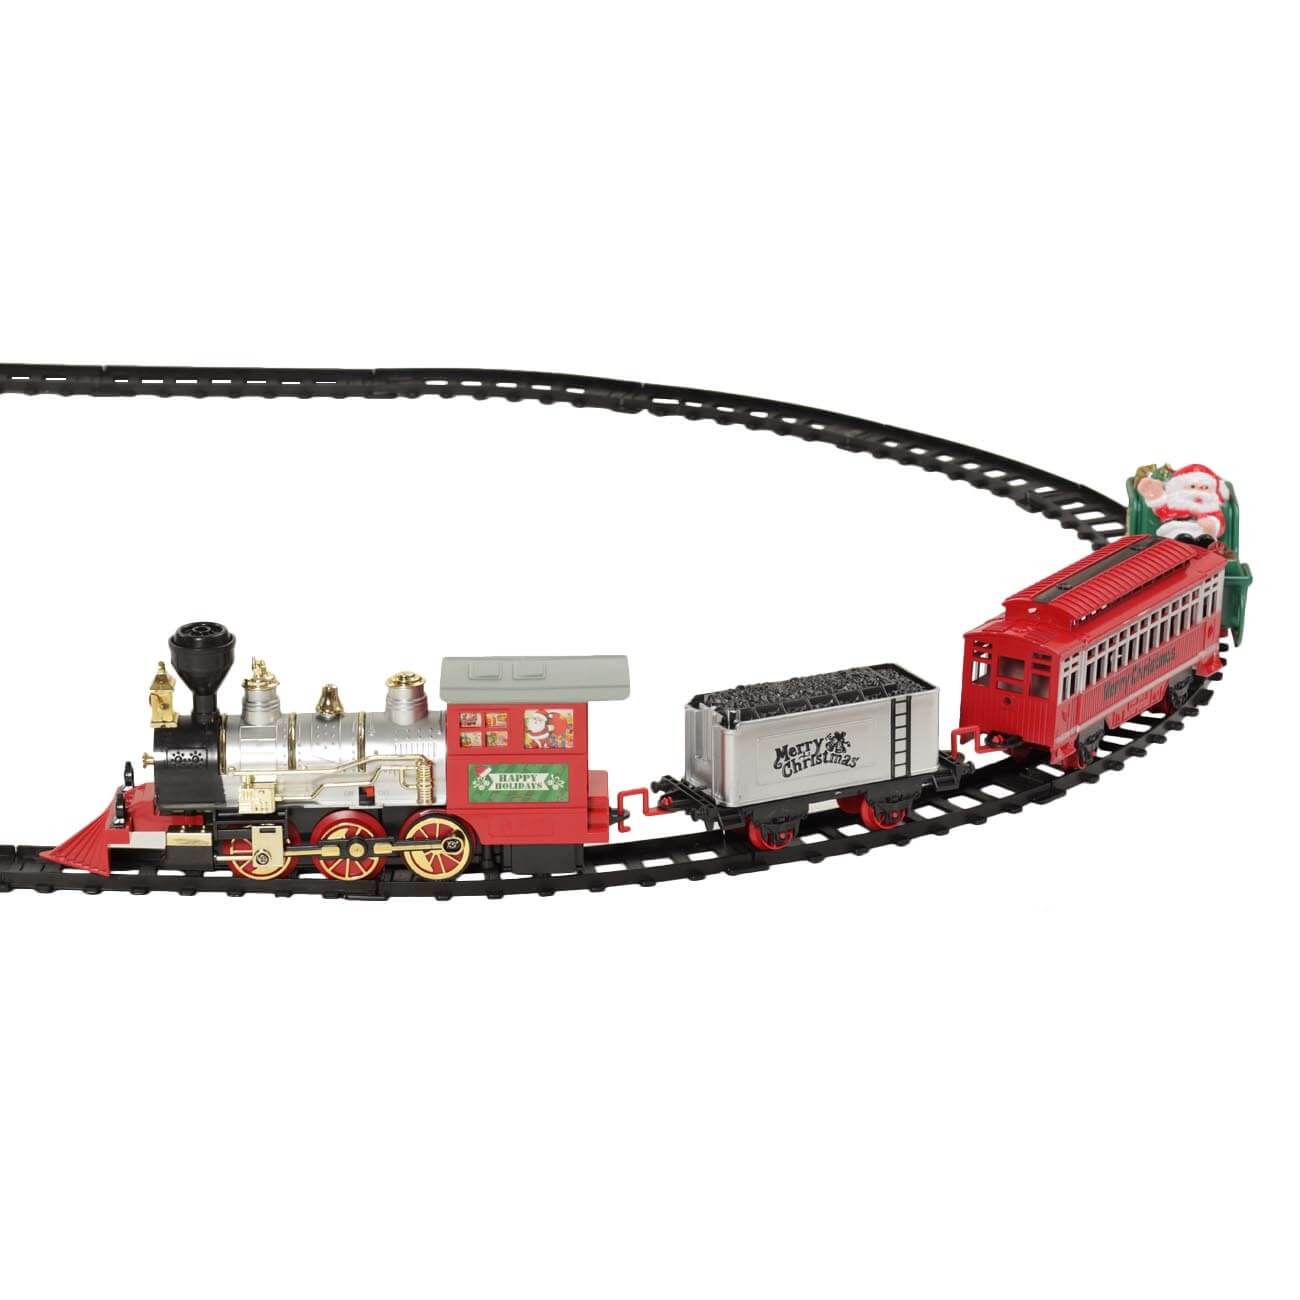 Железная дорога игрушечная, S, музыкальная, с подсветкой/дымом, пластик, Game rail железная дорога игрушечная s музыкальная с подсветкой дымом пластик game rail